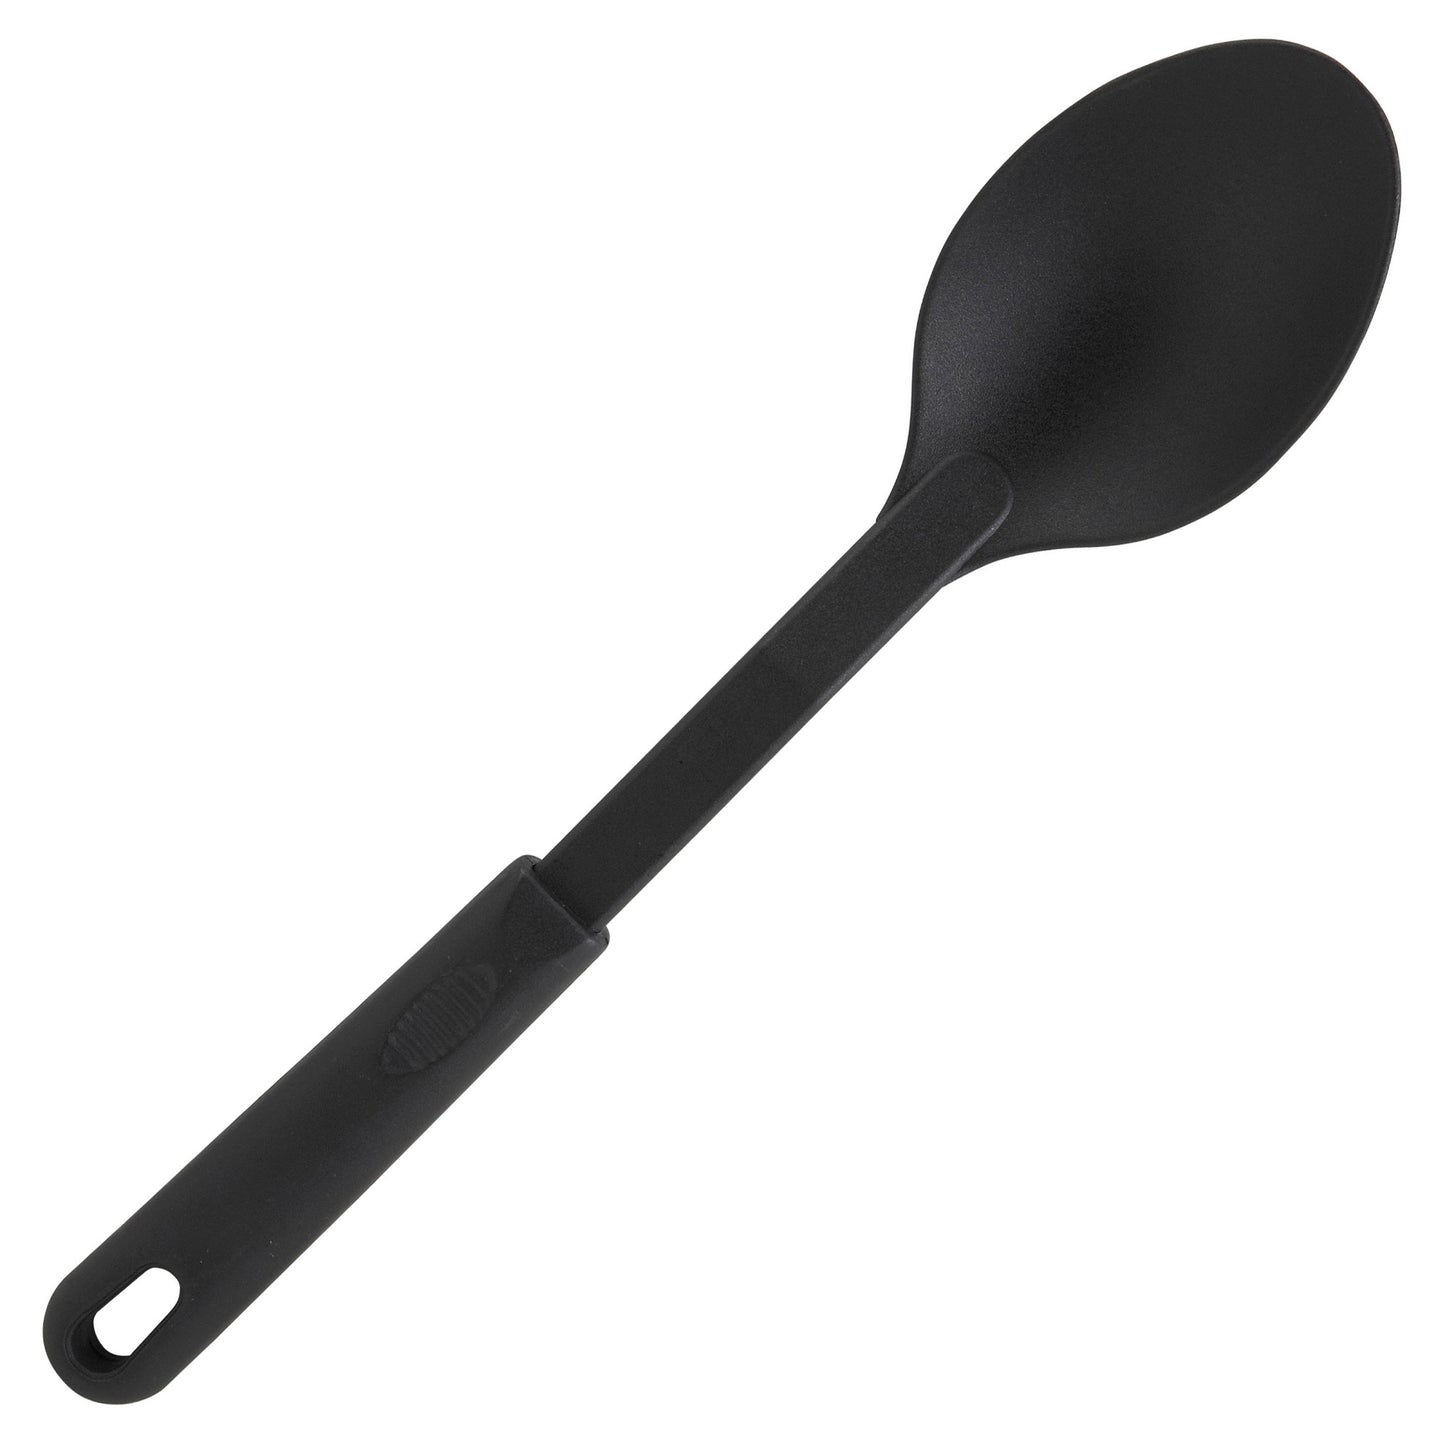 NC-SS1 - Solid Spoon, Nylon